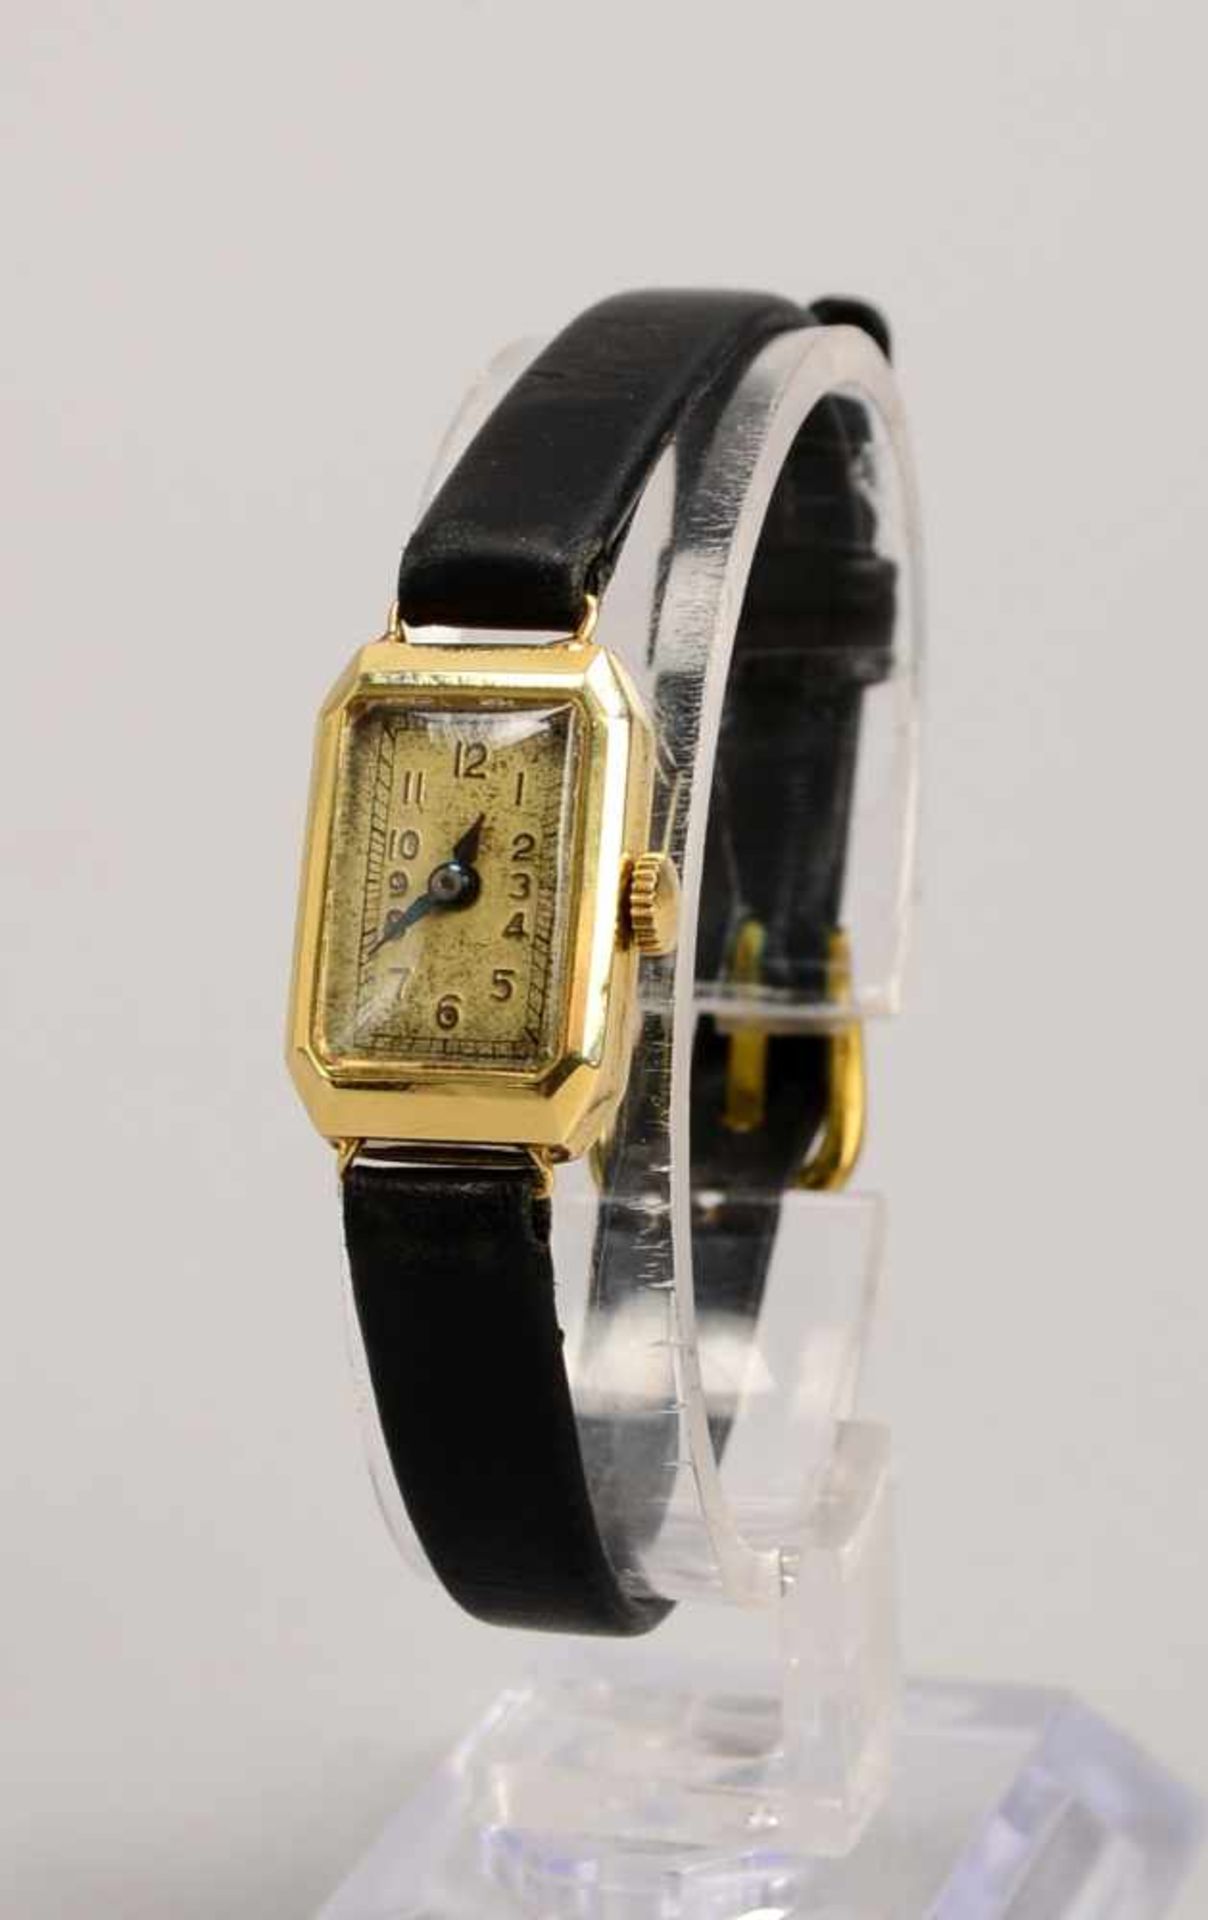 Damen-Armbanduhr, 585 GG, rechteckiges Gehäuse, Uhr läuft an, an schwarzem Lederarmband; Maße